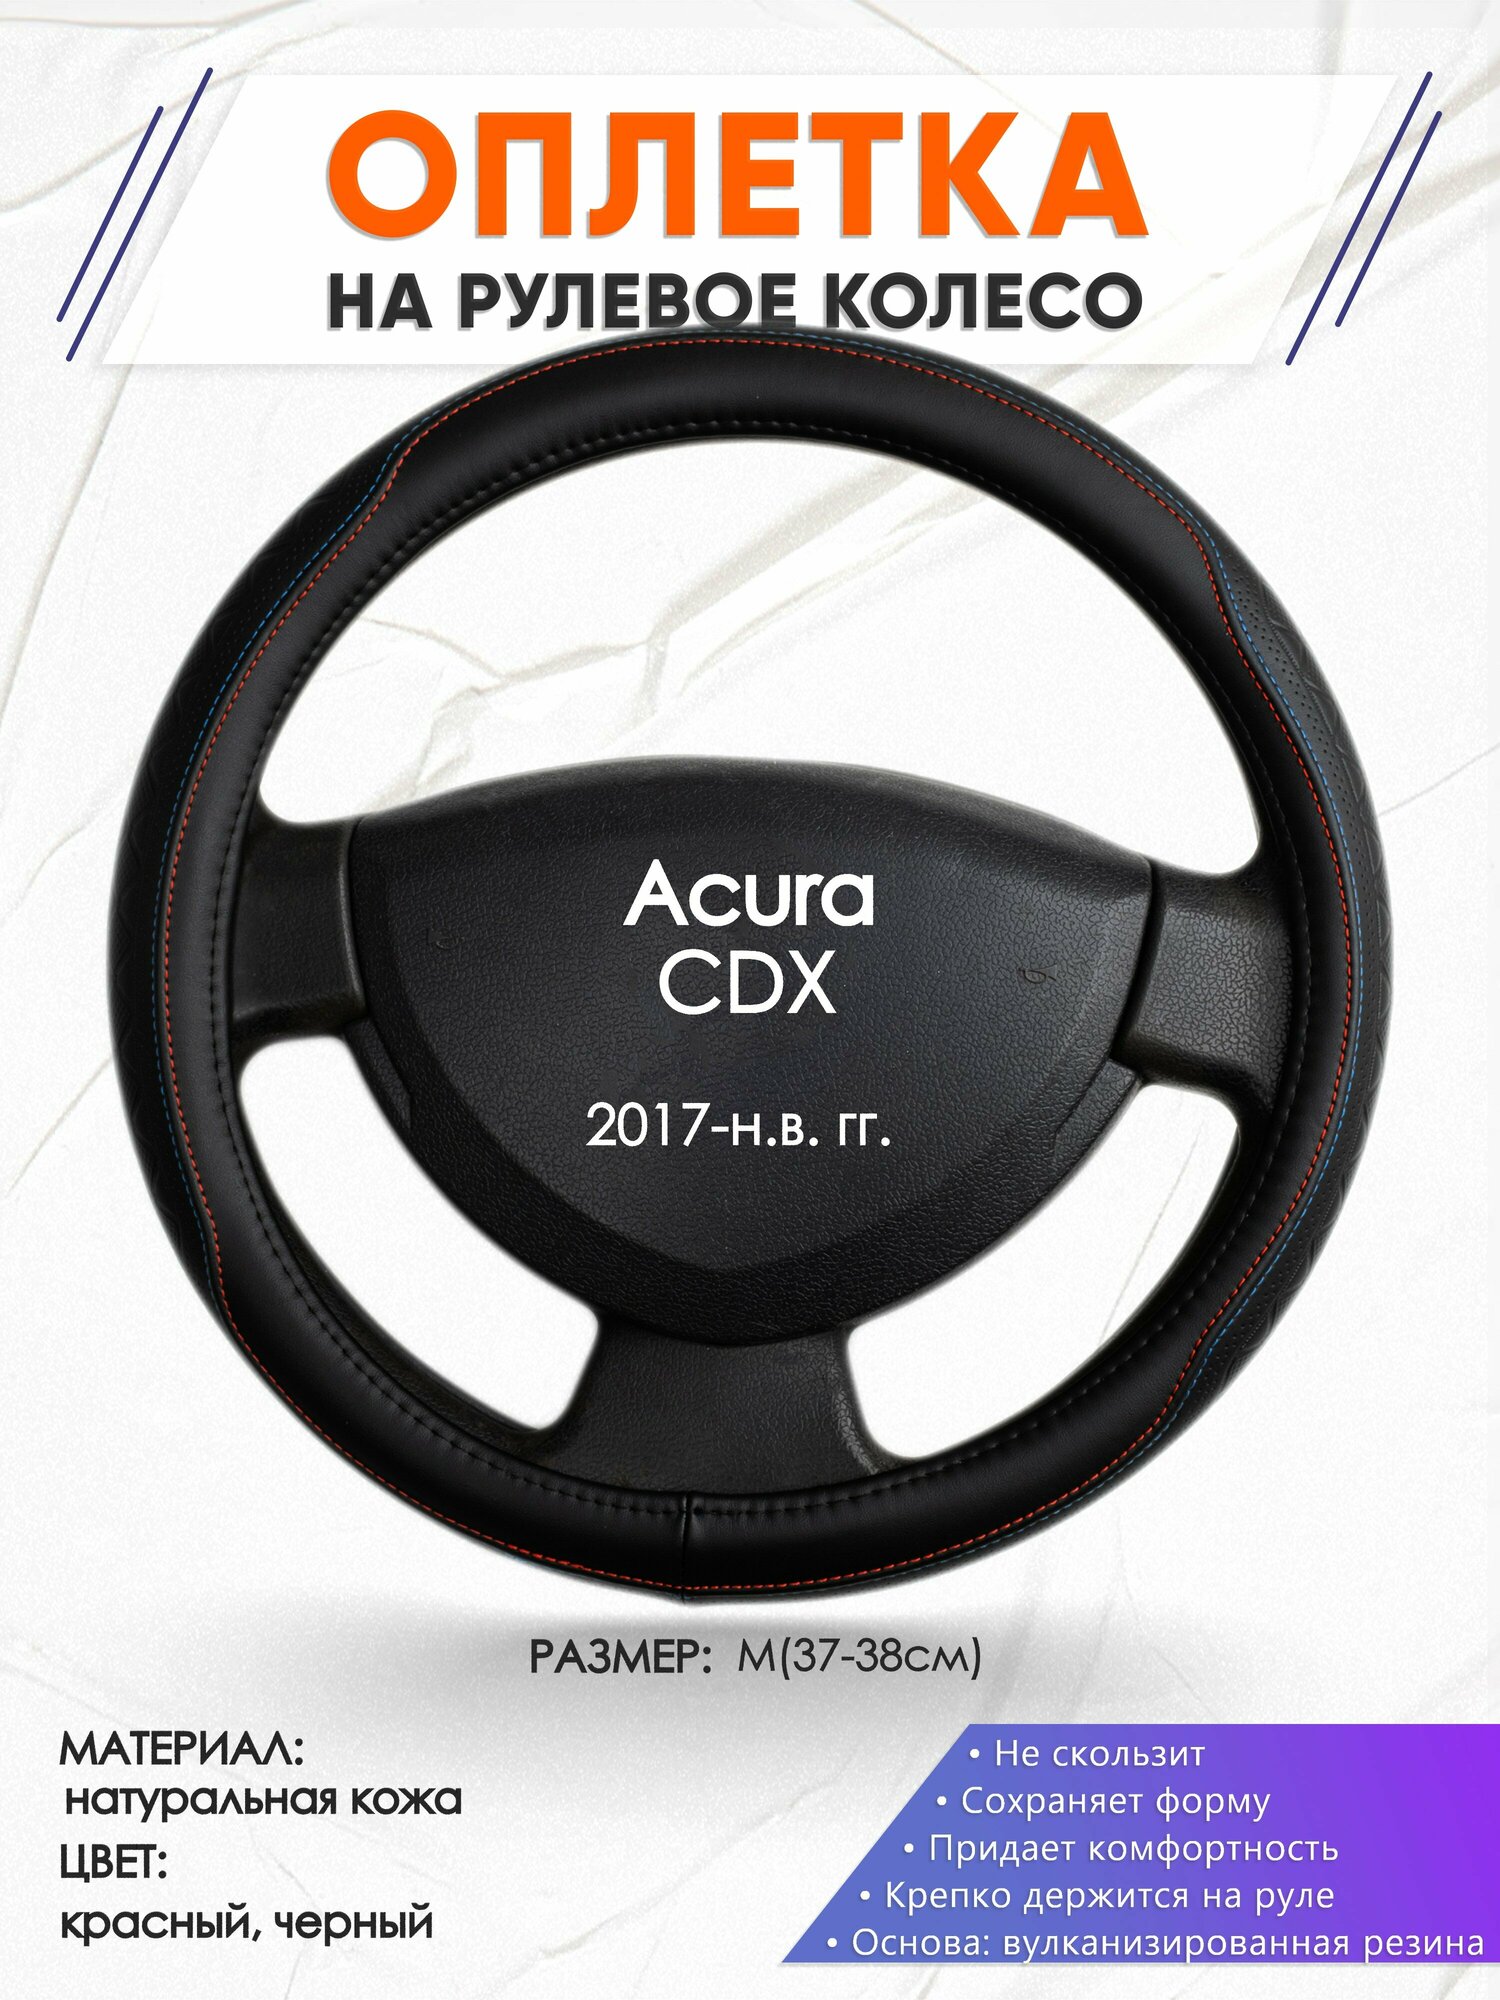 Оплетка наруль для Acura CDX(Акура СДХ) 2017-н. в. годов выпуска, размер M(37-38см), Натуральная кожа 89